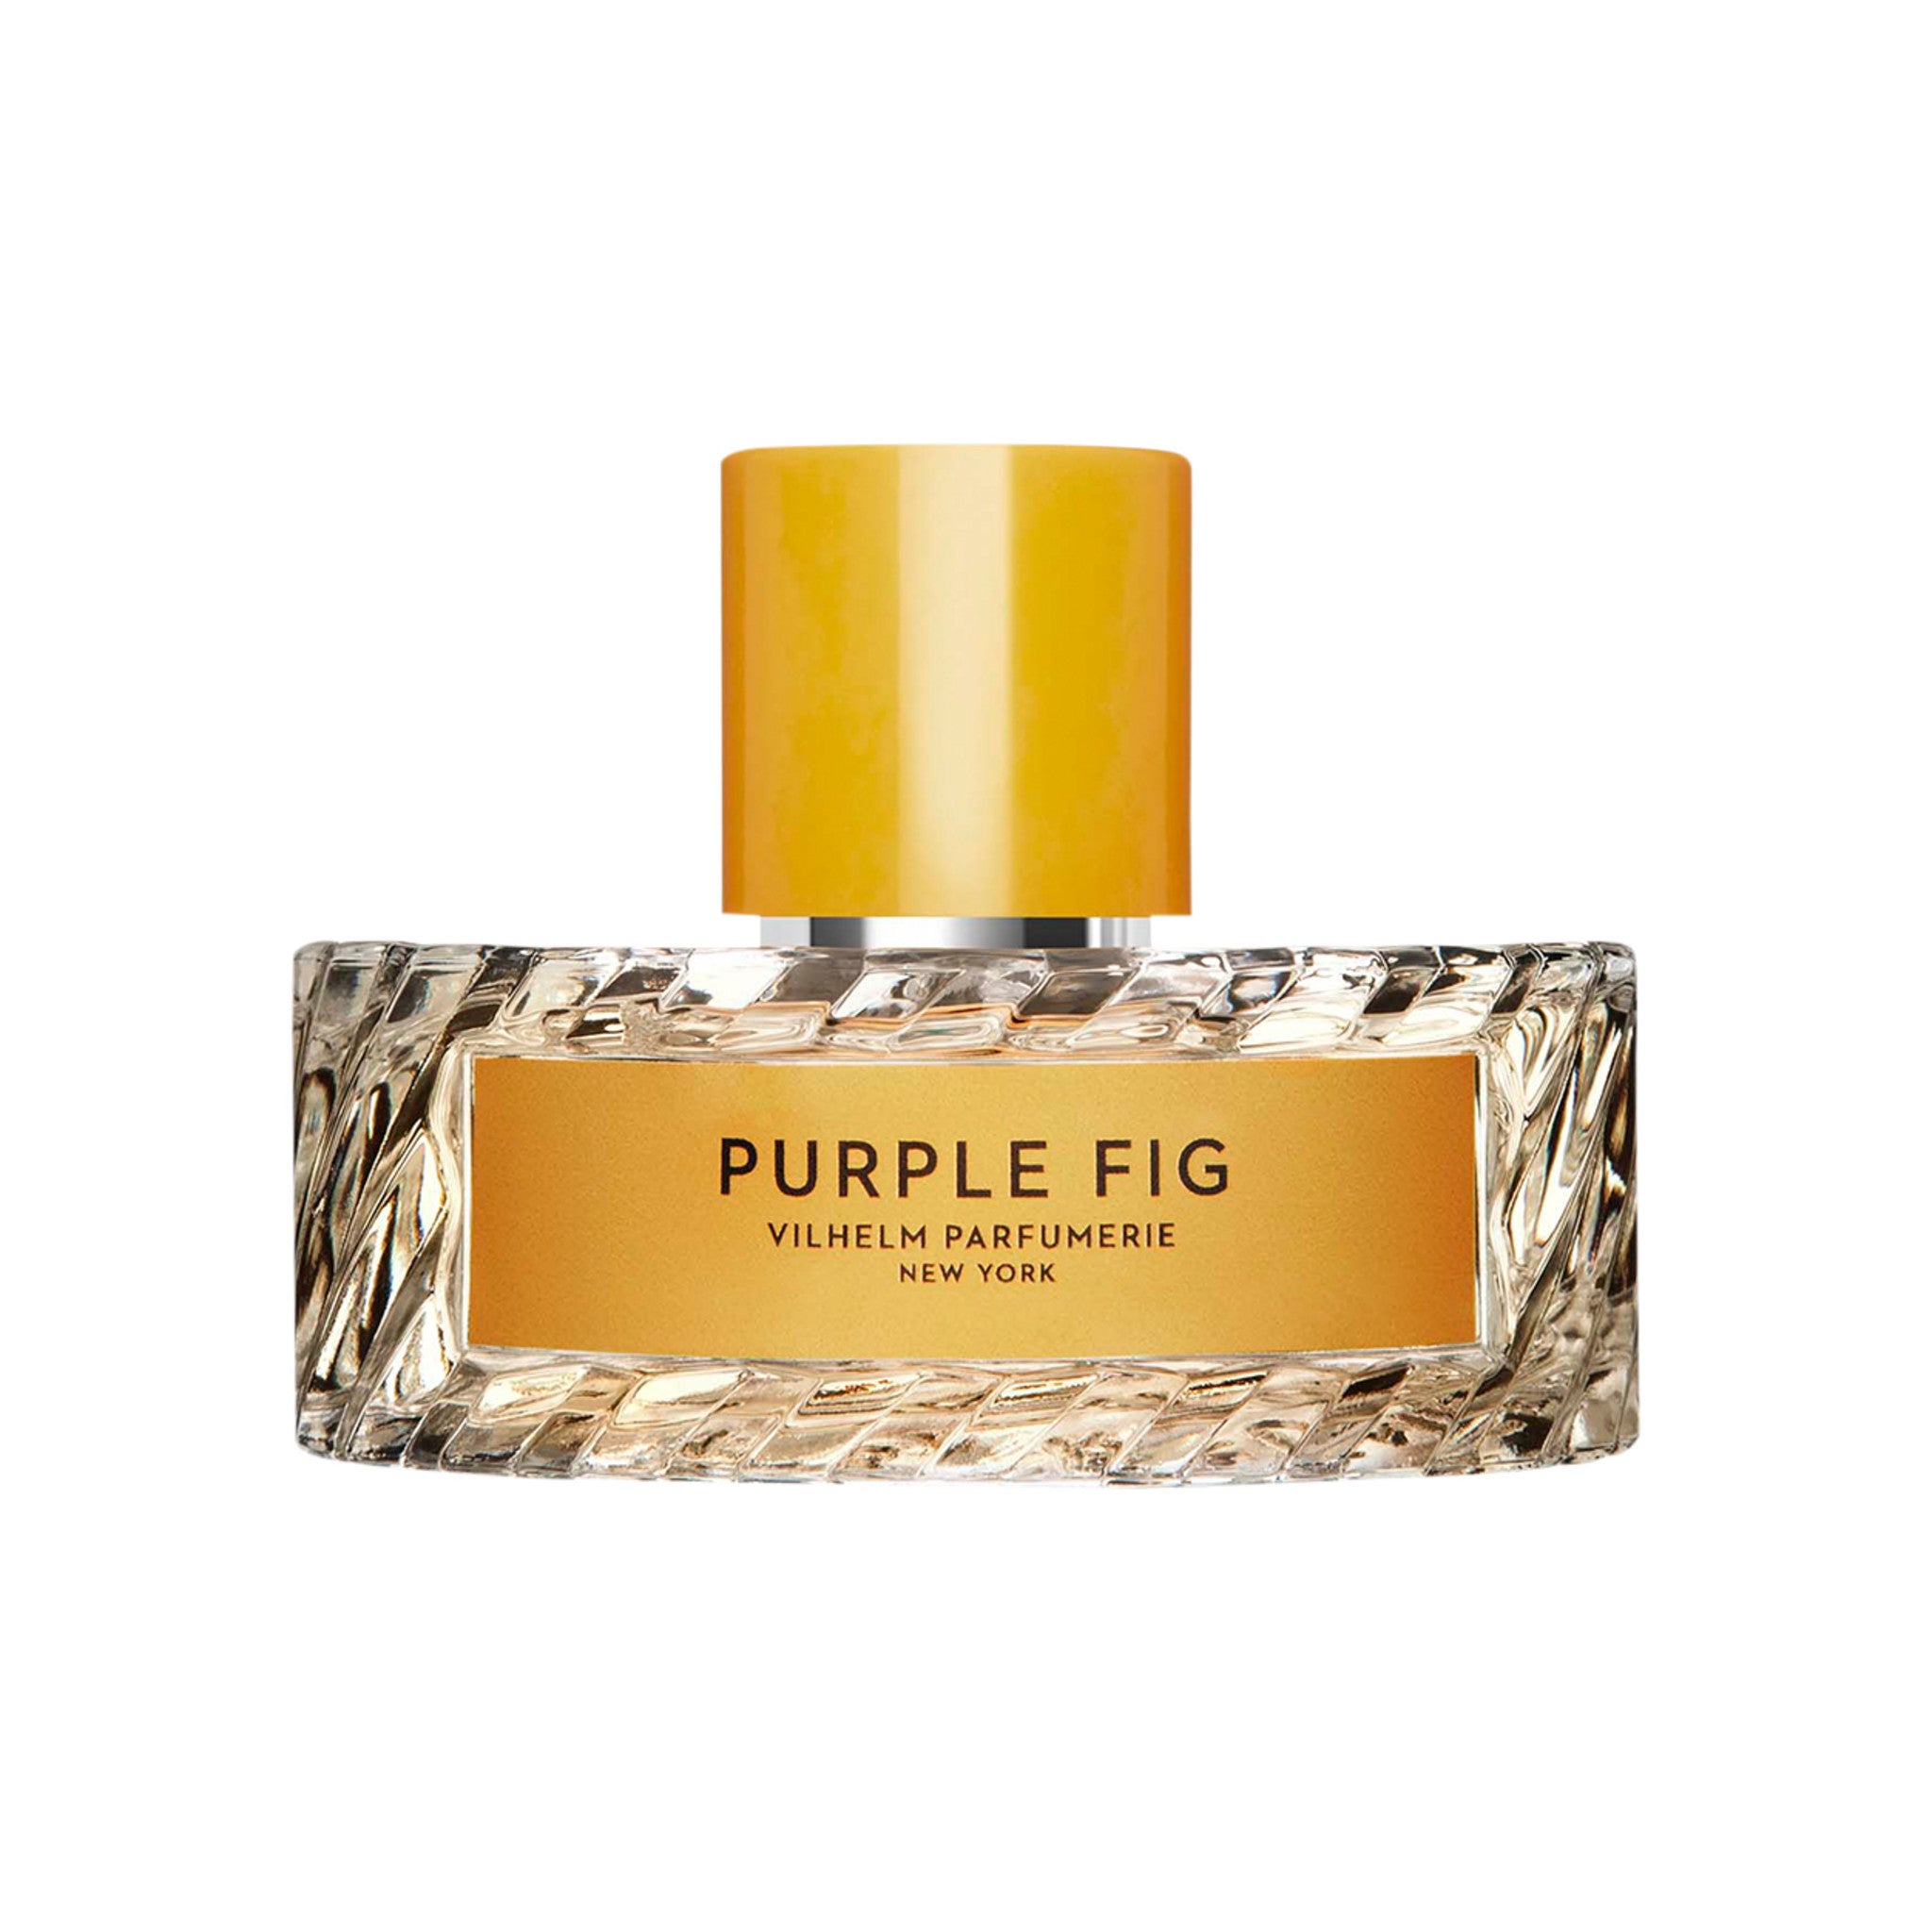 Vilhelm Parfumerie Purple Fig Eau de Parfum Size variant: 100 ml main image.